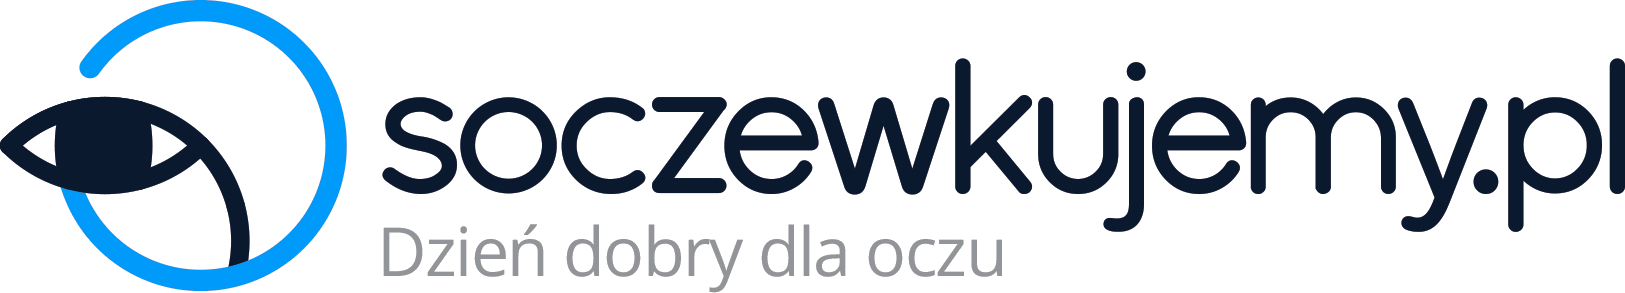  Soczewkujemy.pl 